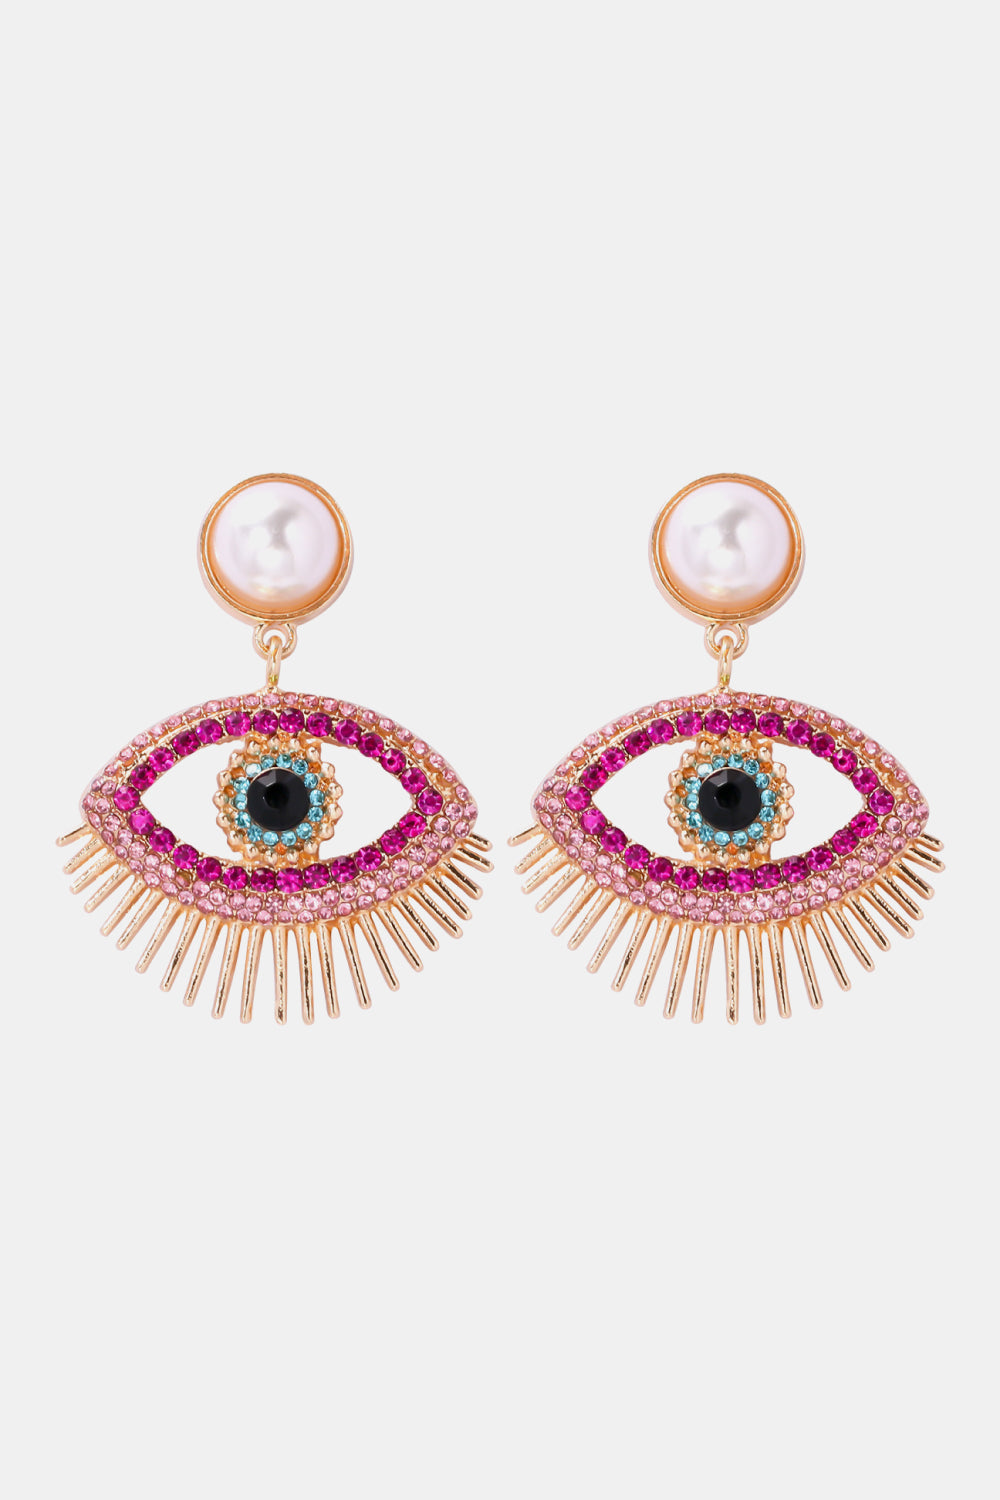 Evil Eye Shape Rhinestone Zinc Alloy Synthetic Dangle Earrings - Pink / One Size - Women’s Jewelry - Earrings - 1 - 2024